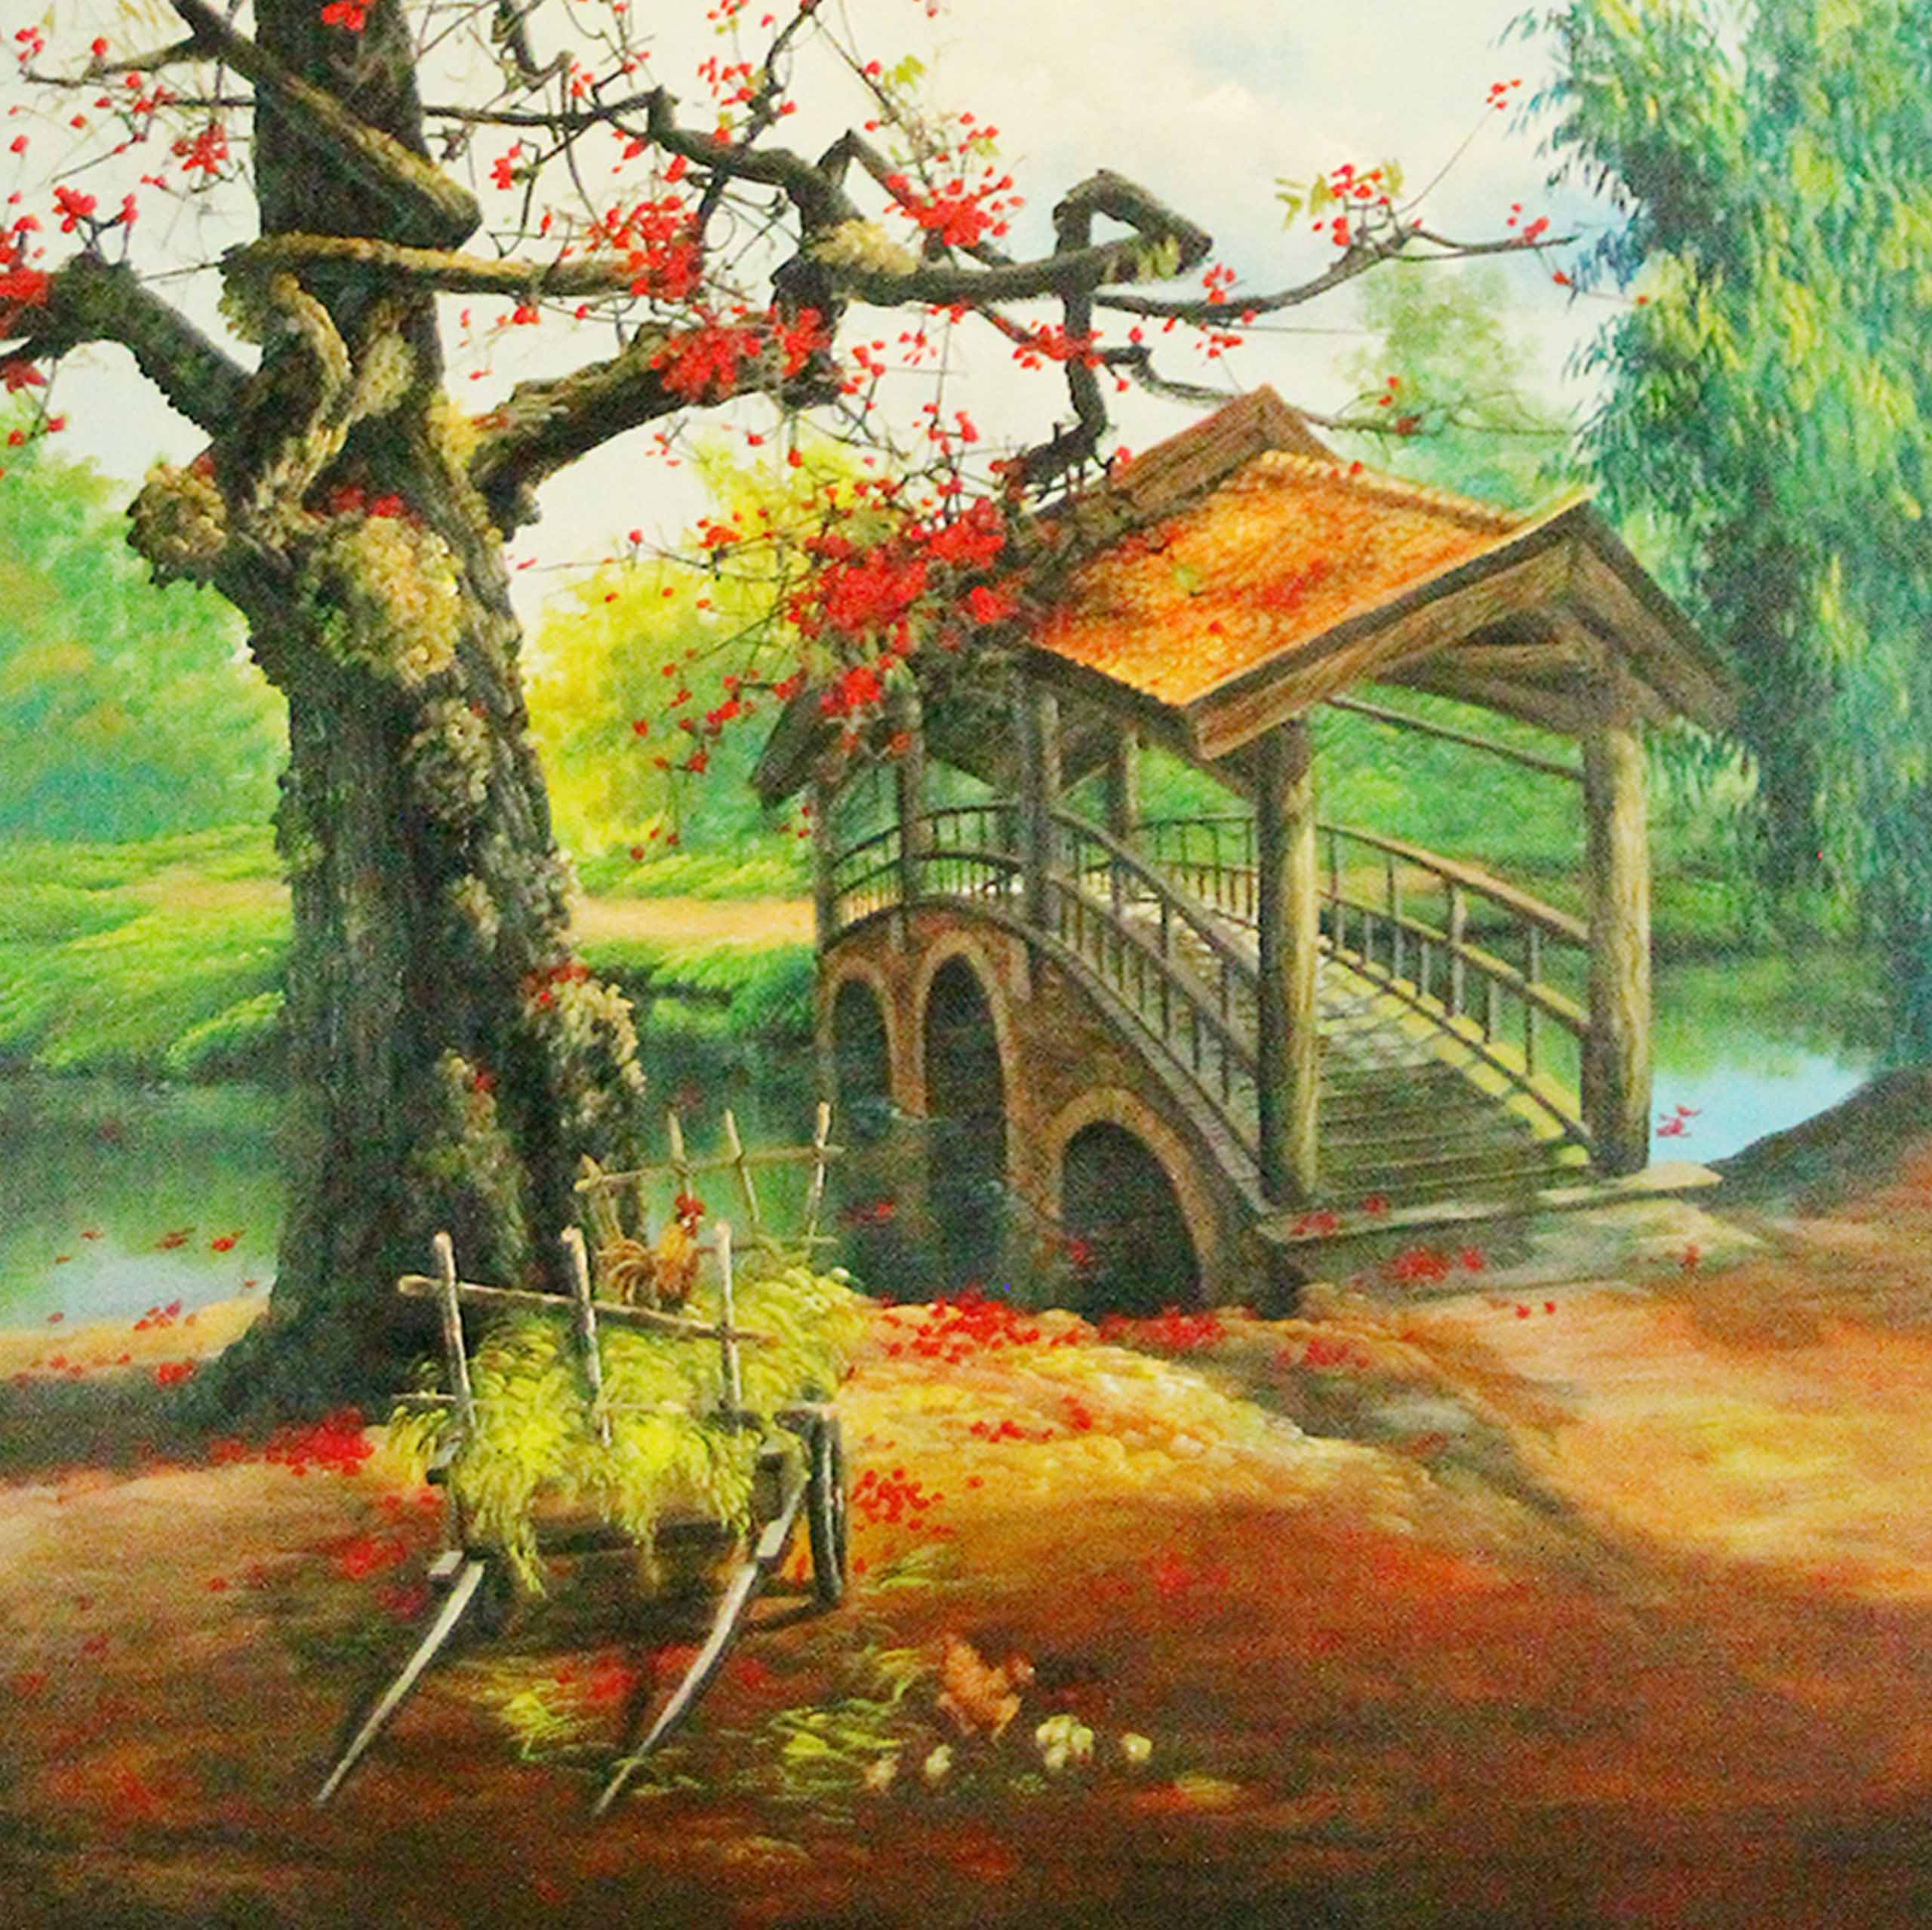 Tranh sơn dầu phong cảnh làng quê tác phẩm Nét Xưa - TSD45LHAR